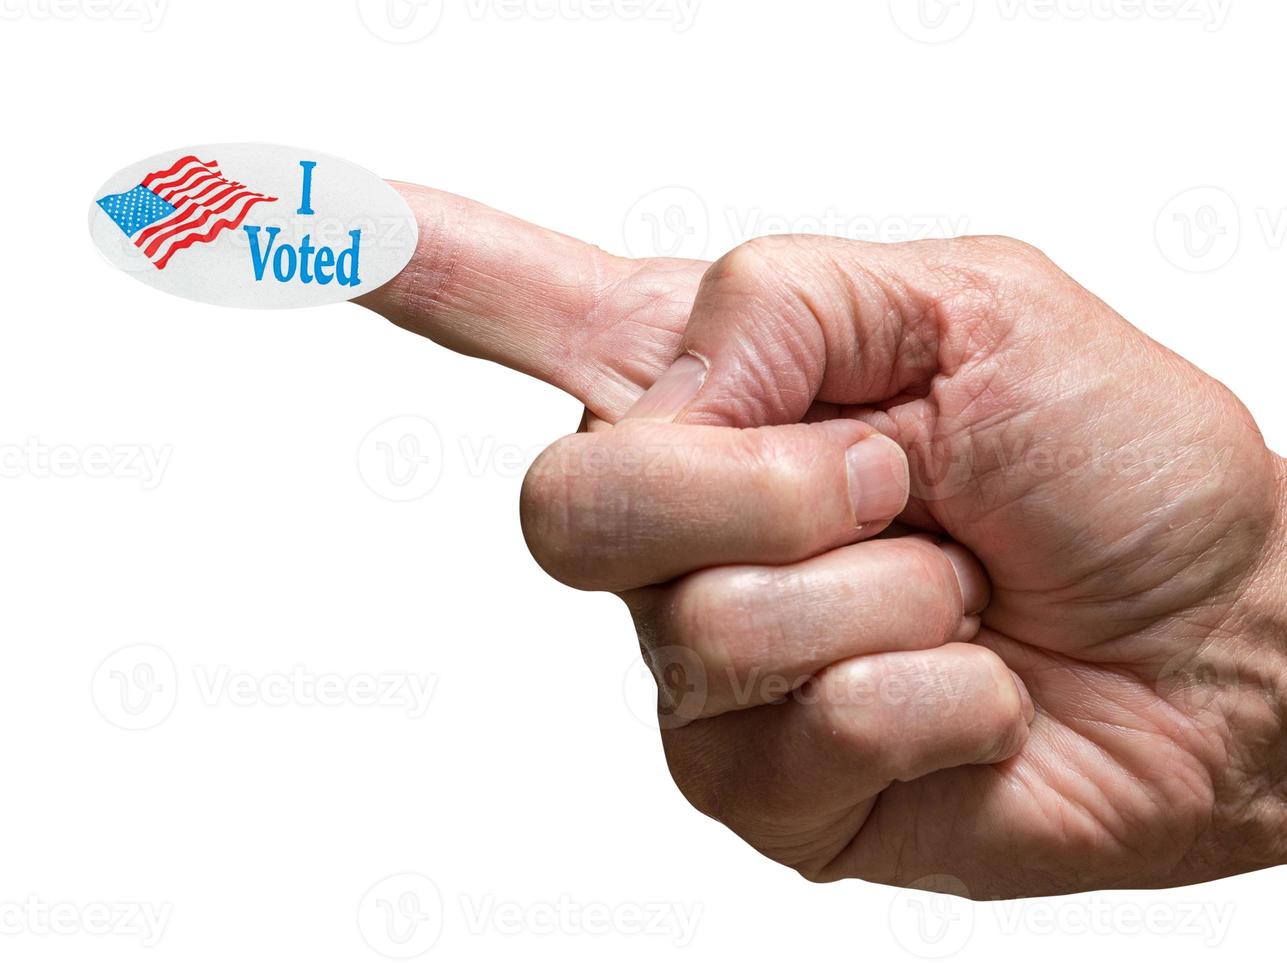 eu votei adesivo de campanha no dedo da mão de adulto sênior isolado contra branco foto